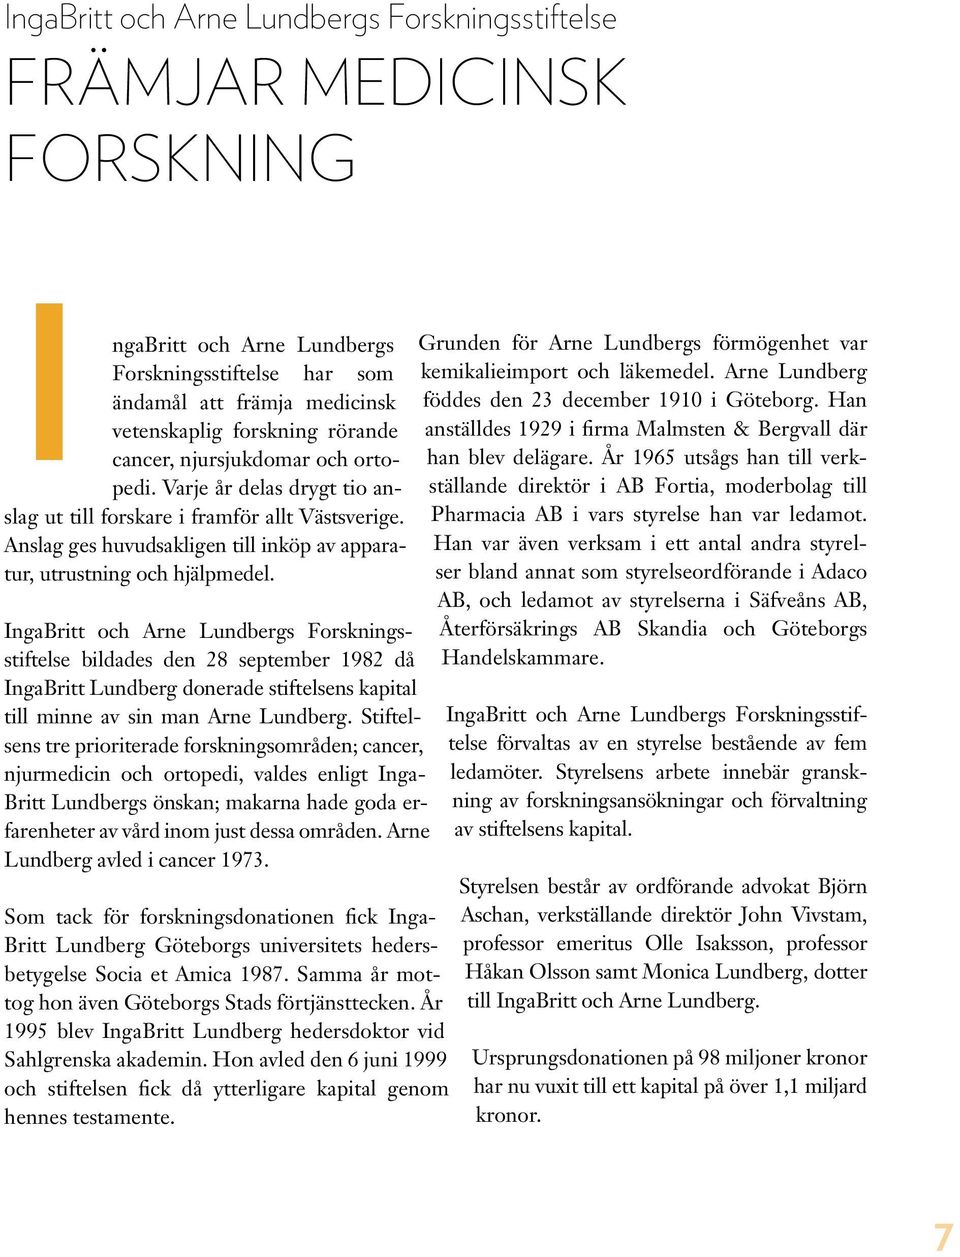 IngaBritt och Arne Lundbergs Forskningsstiftelse bildades den 28 september 1982 då IngaBritt Lundberg donerade stiftelsens kapital till minne av sin man Arne Lundberg.